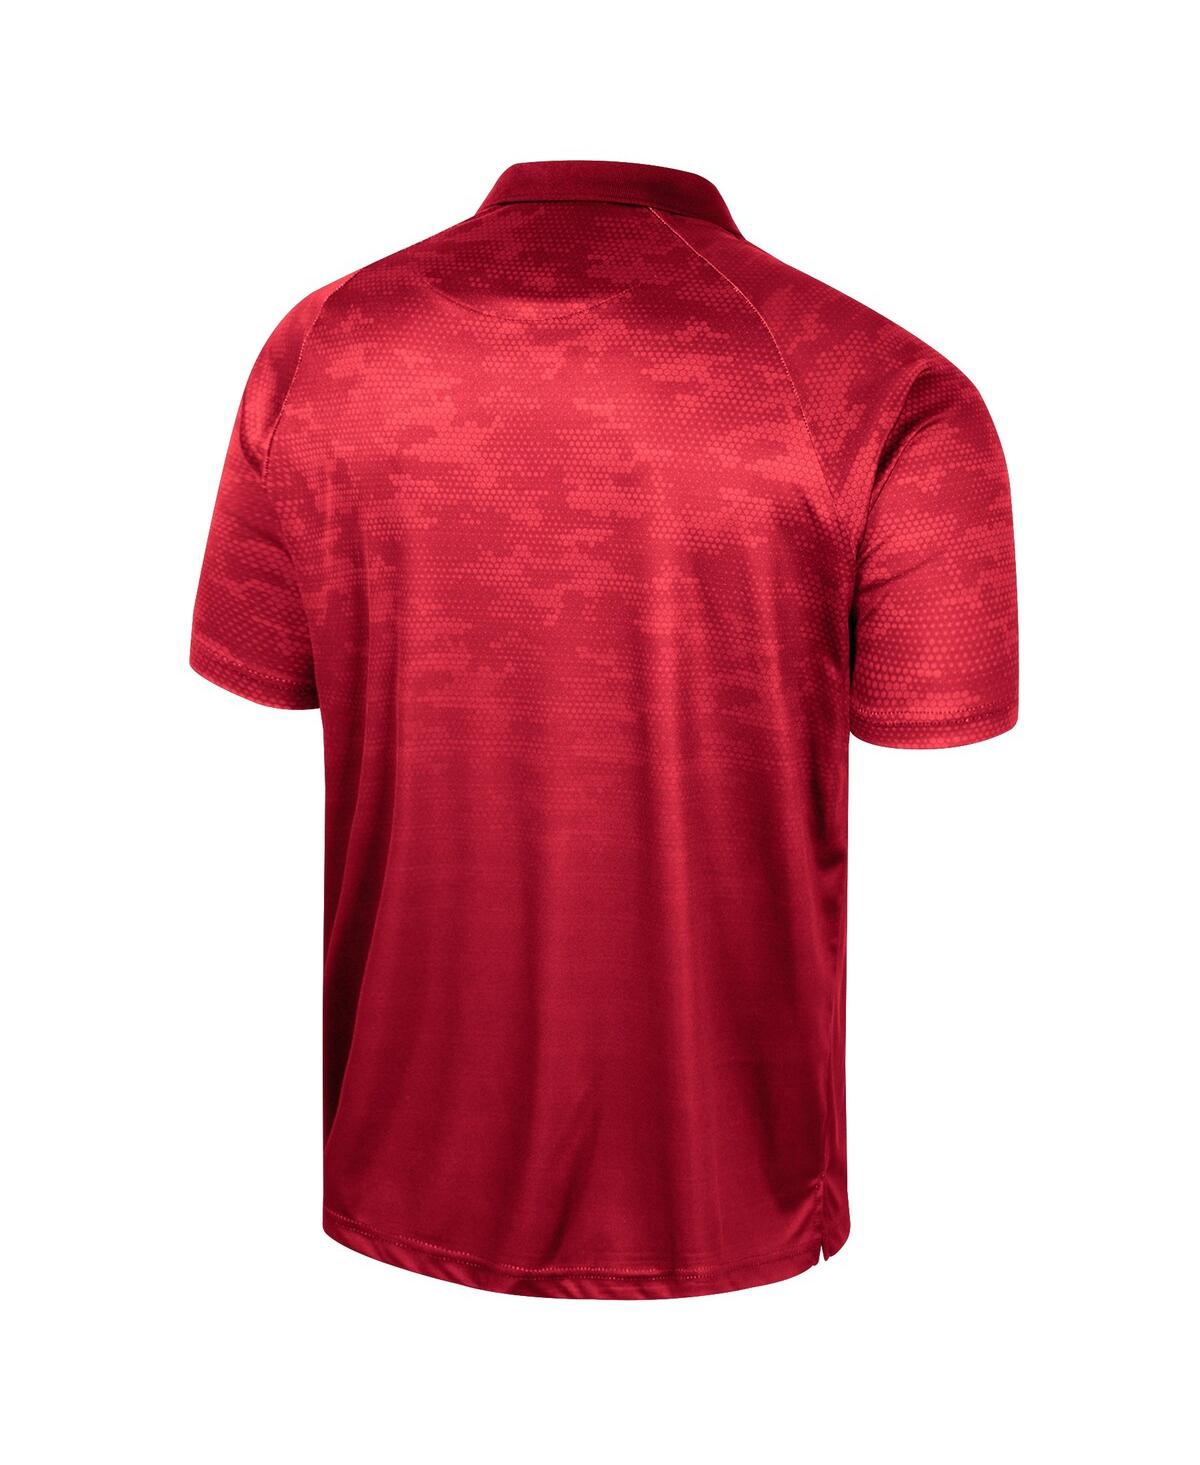 Shop Colosseum Men's  Red Louisville Cardinals Honeycomb Raglan Polo Shirt